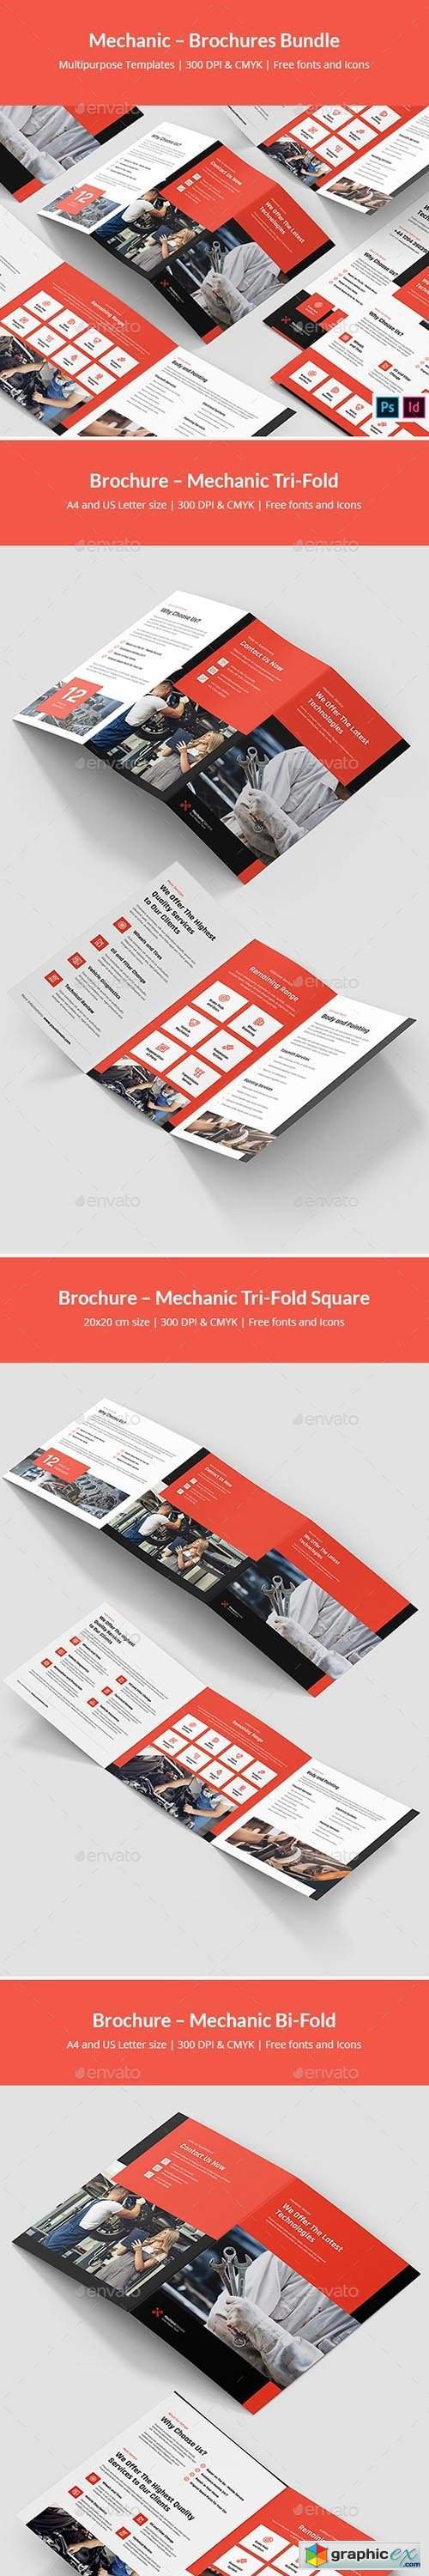 Mechanic – Brochures Bundle Print Templates 5 in 1 29327053